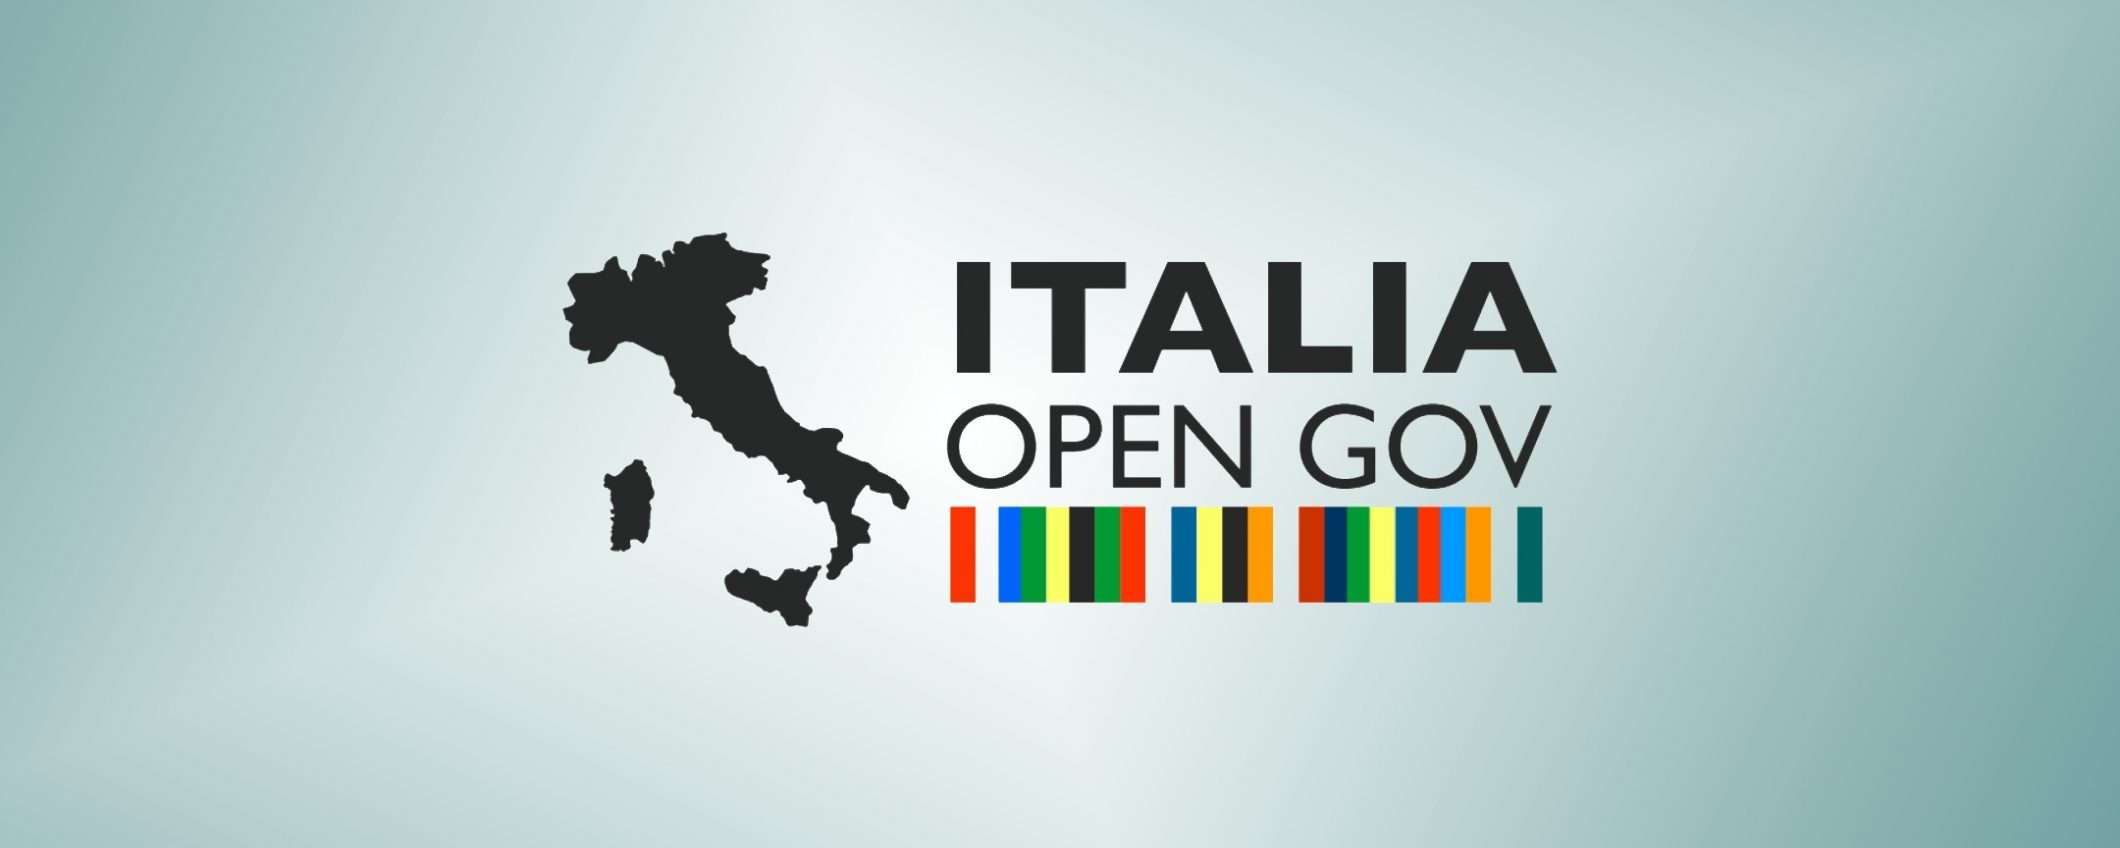 Open Government Partnership: Italia rieletta